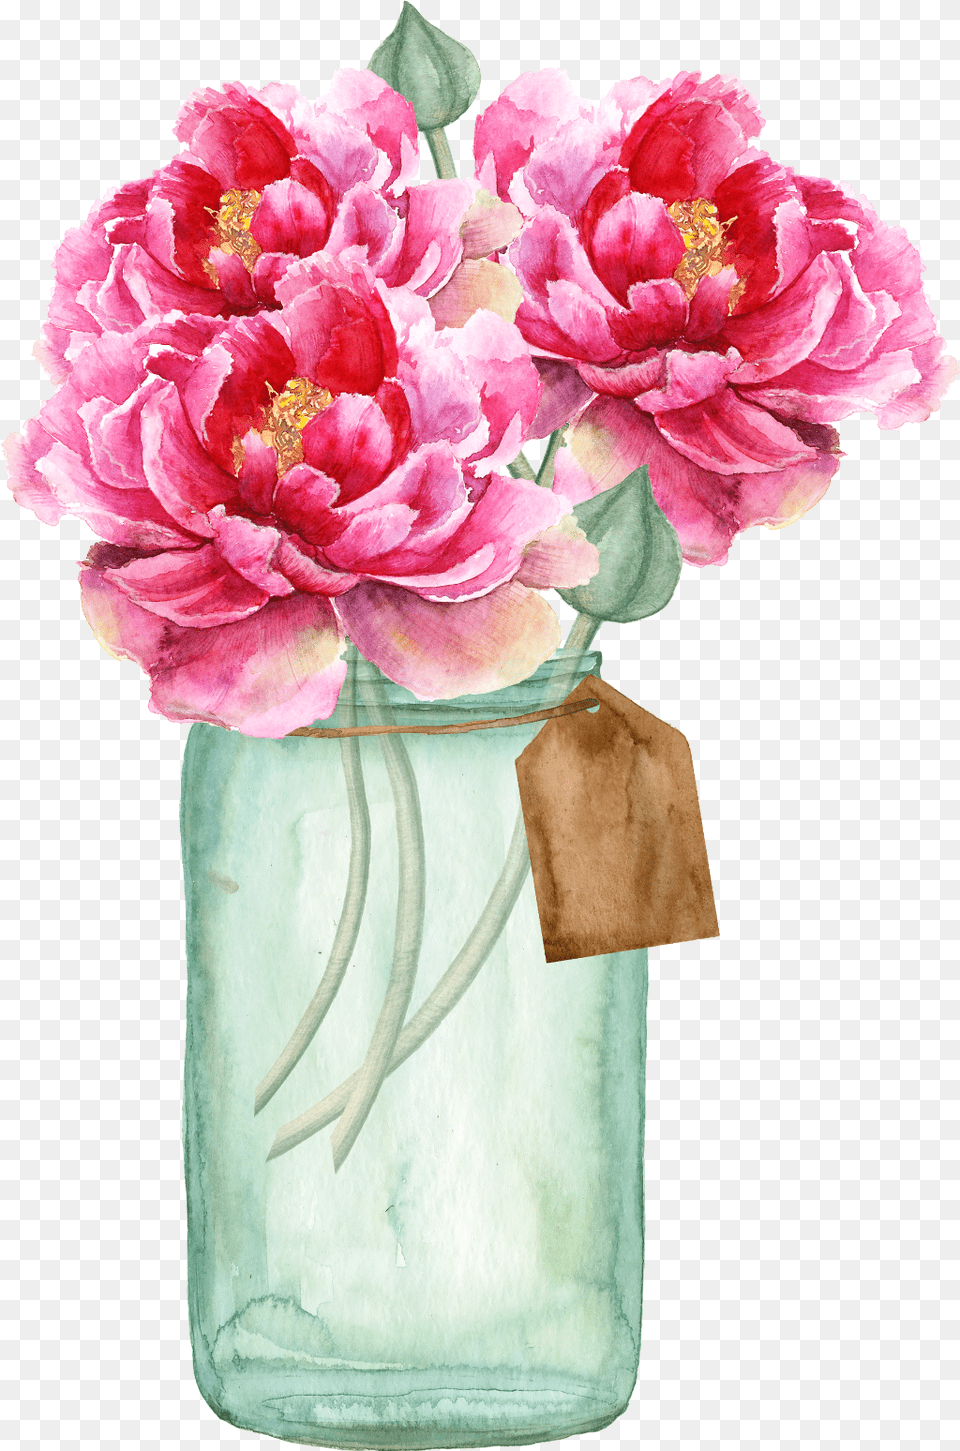 Floral Flowers Vase Vase Flower For Wedding Invitations, Flower Arrangement, Flower Bouquet, Jar, Plant Free Png Download